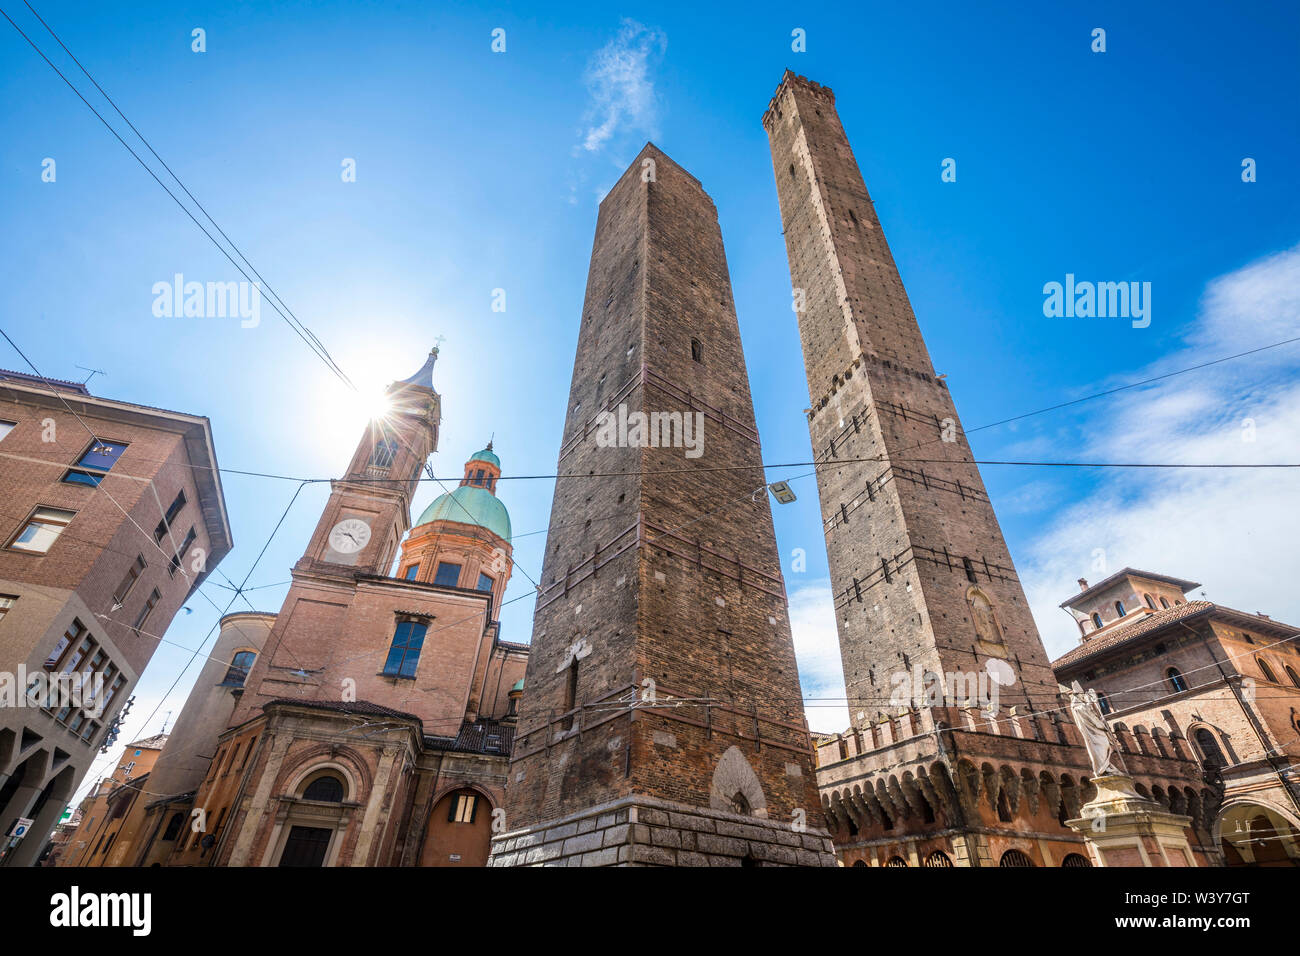 Le due Torri (Two Towers), Bologna, Emilia-Romagna, Italy Stock Photo